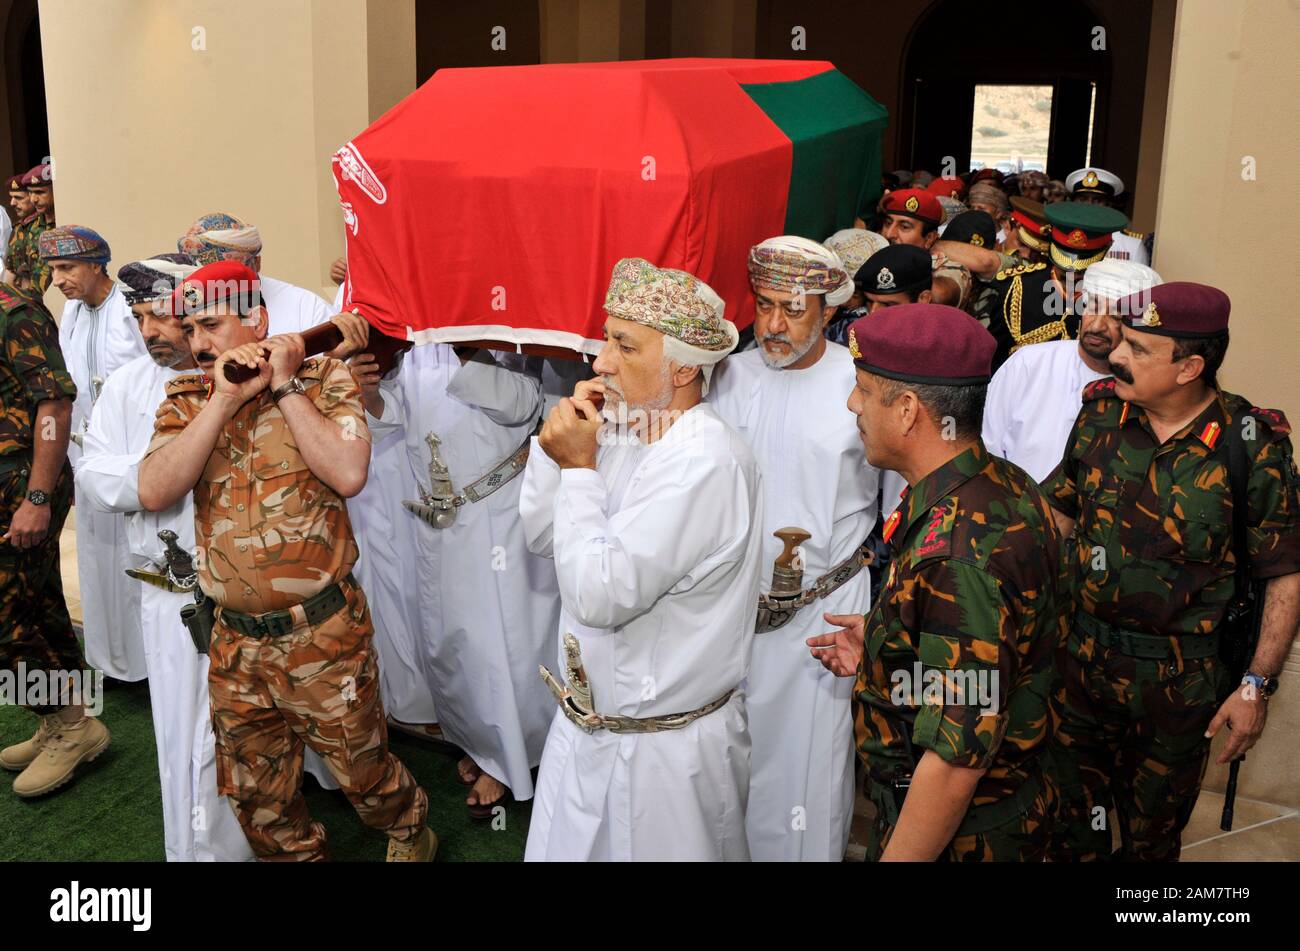 Muscat. 11 ene, 2020. Los soldados se llevan el ataúd del difunto Sultán Qaboos bin Said de Omán en su funeral en Muscat, Omán, el pasado 11 de enero, 2020. Qaboos bin Said de Omán, que gobernó durante casi medio siglo, murió el viernes por la noche a la edad de 79 años, dijo la agencia de noticias de Omán. Crédito: Xinhua/Alamy Live News Foto de stock